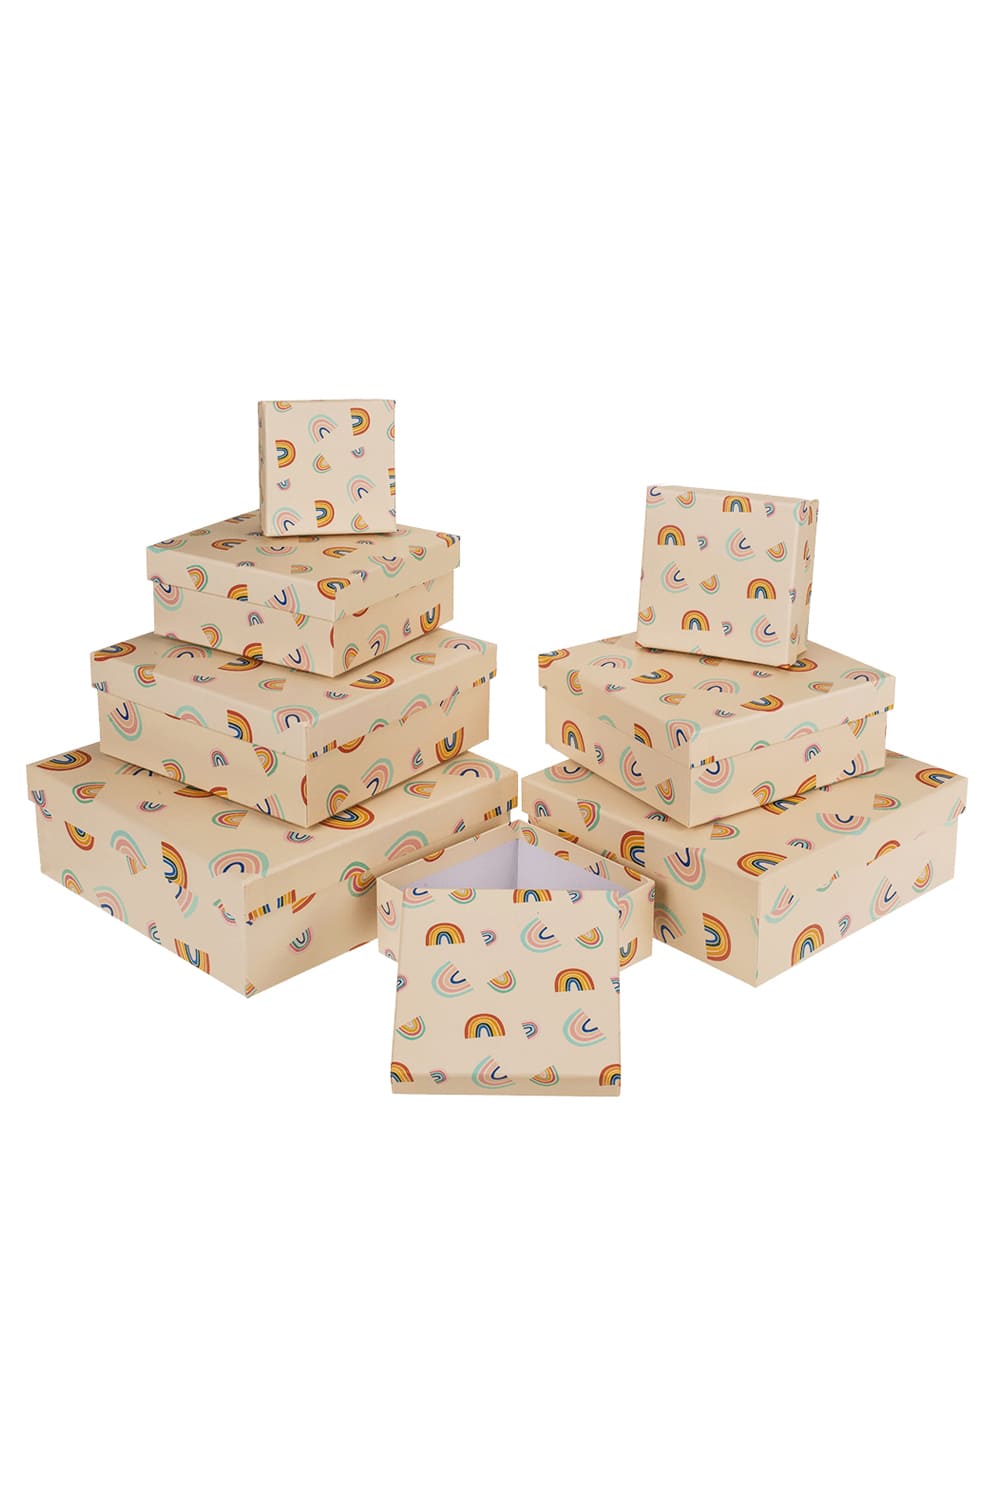 Eine originelle Geschenkverpackung. Mit diesen Geschenkboxen kann jeder Geschenk-Moment zum aufregenden Geschenk-Erlebnis werden! Auch ein kleines Praesent wird in diesen Regenbogen Geschenkkartonagen zum wahren Highlight. Die Geschenkboxen sind im 8er-Set und haben diverse Groessen.